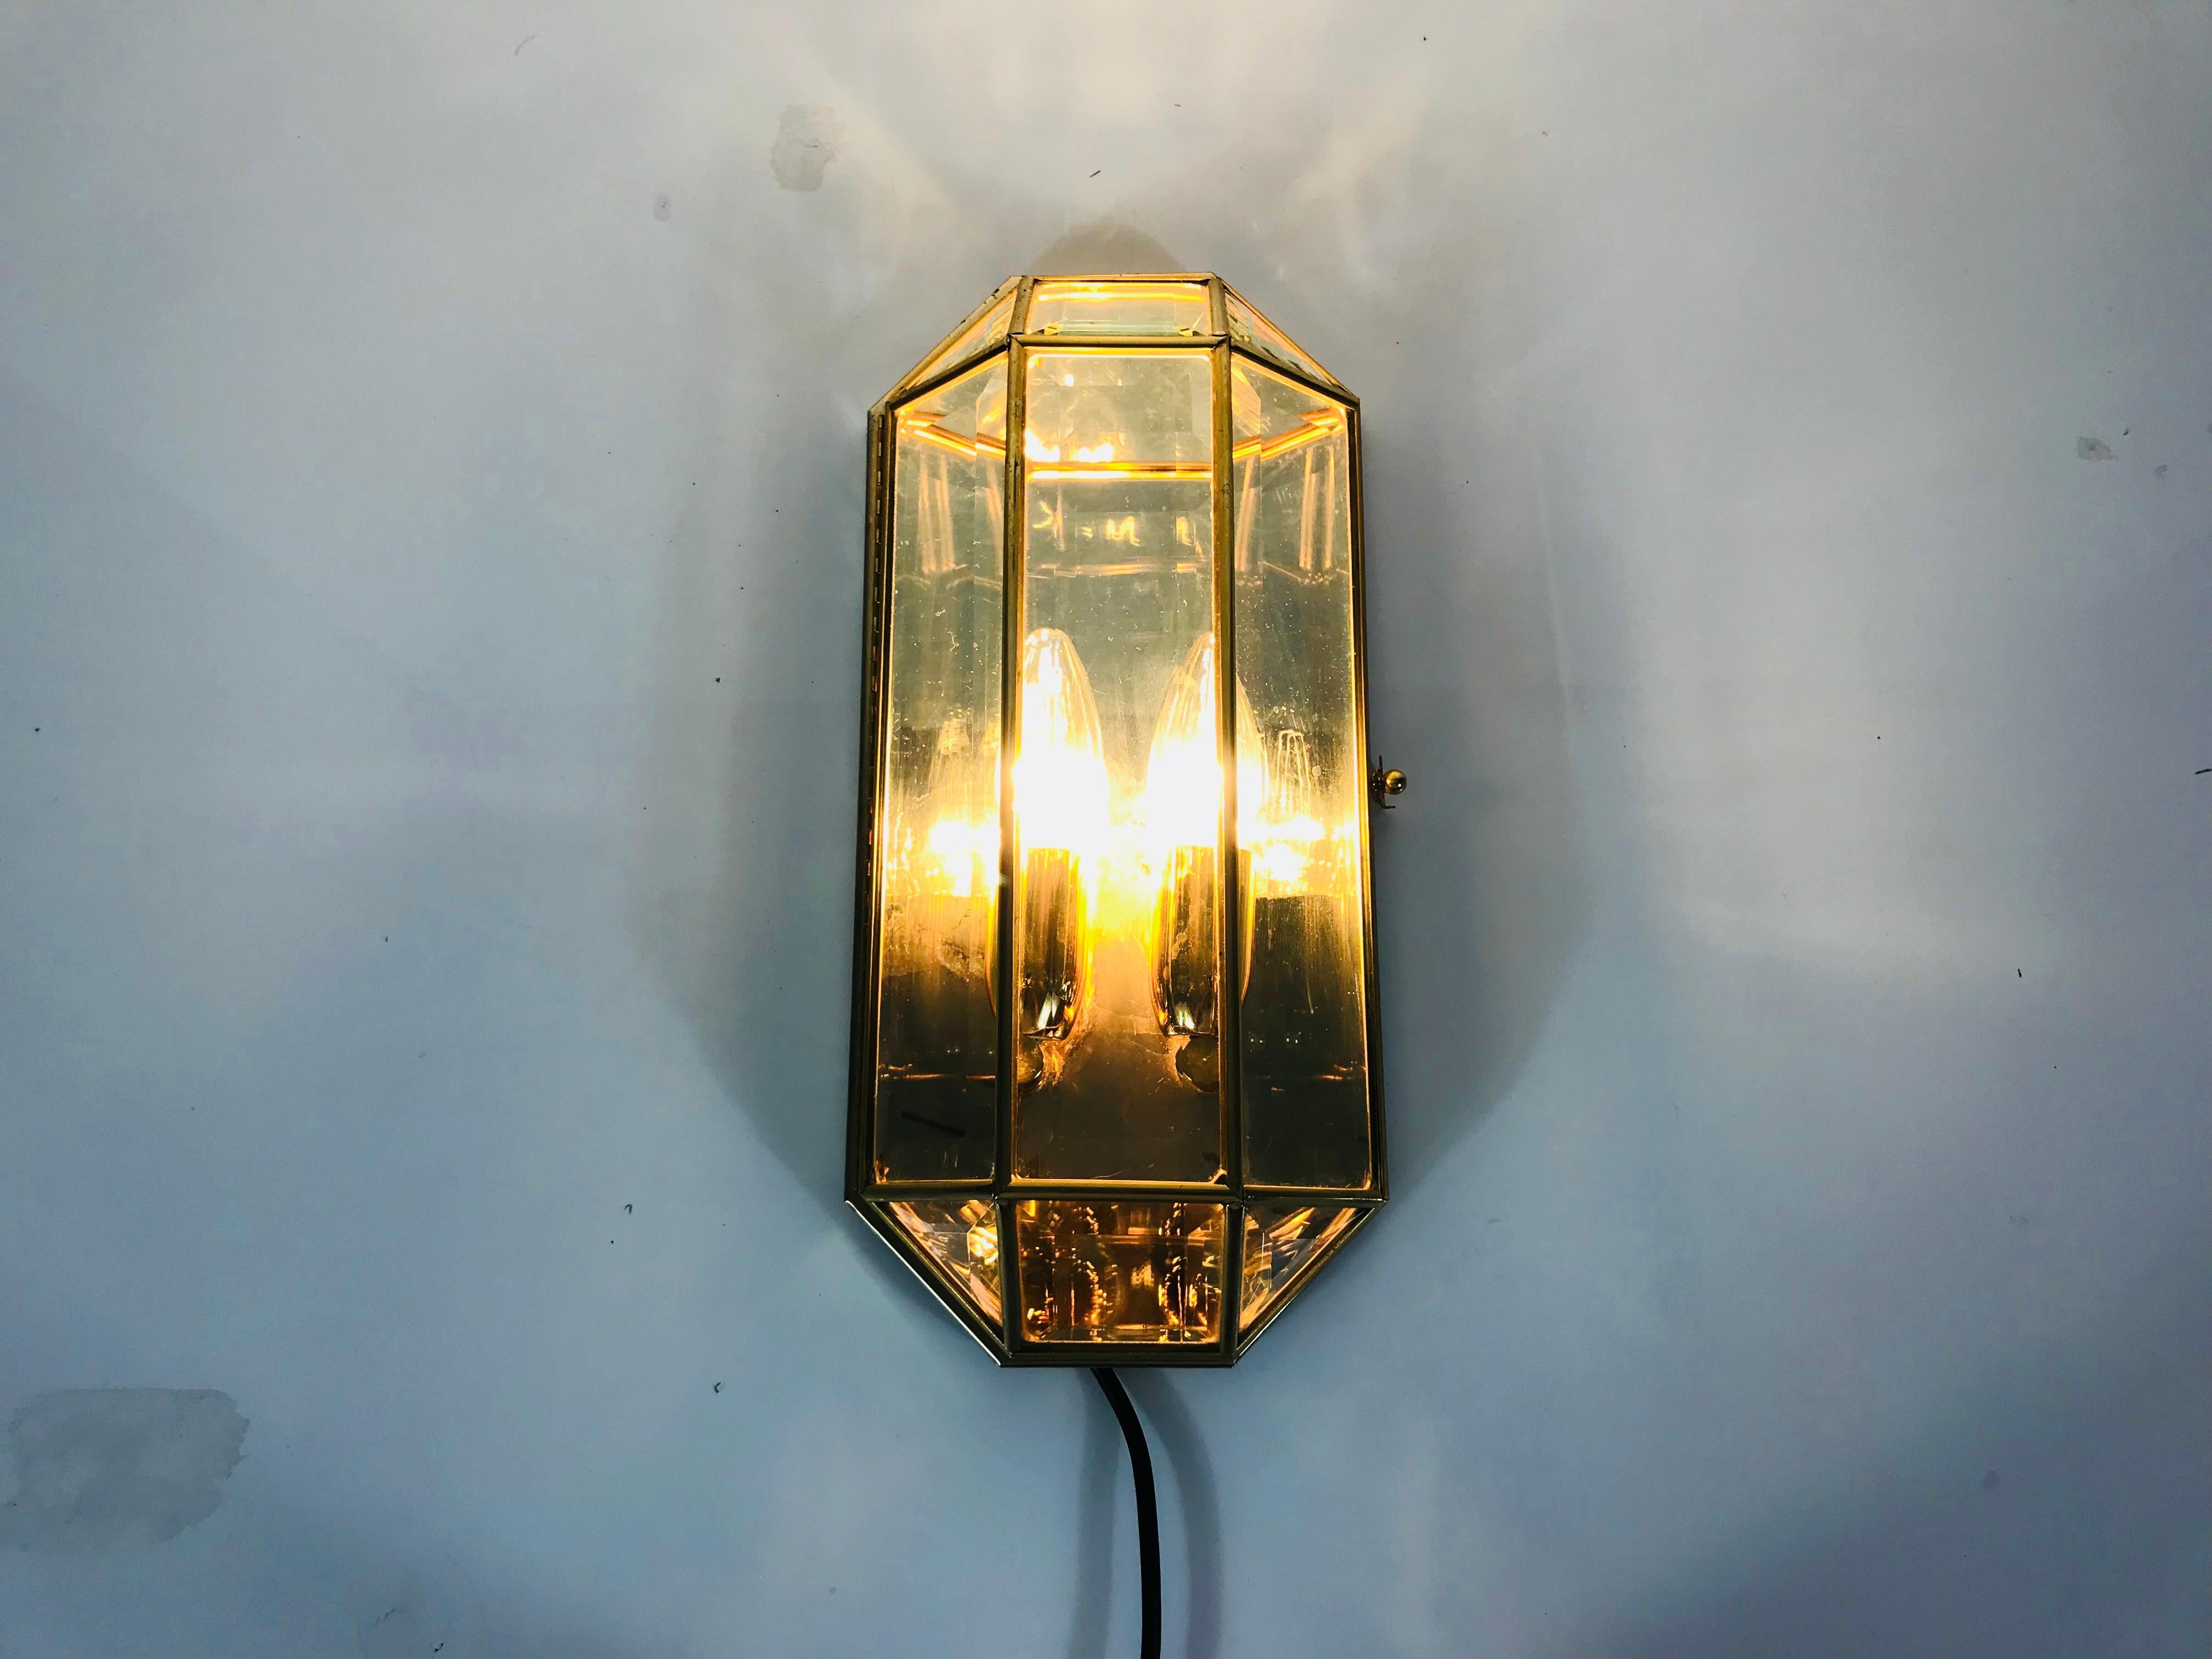 Une lampe murale du milieu du siècle dernier fabriquée en Italie dans les années 1960. L'abat-jour a une forme octogonale et est fabriqué en verre et en métal doré. Le dos est en aluminium.

La lampe possède deux douilles qui nécessitent une